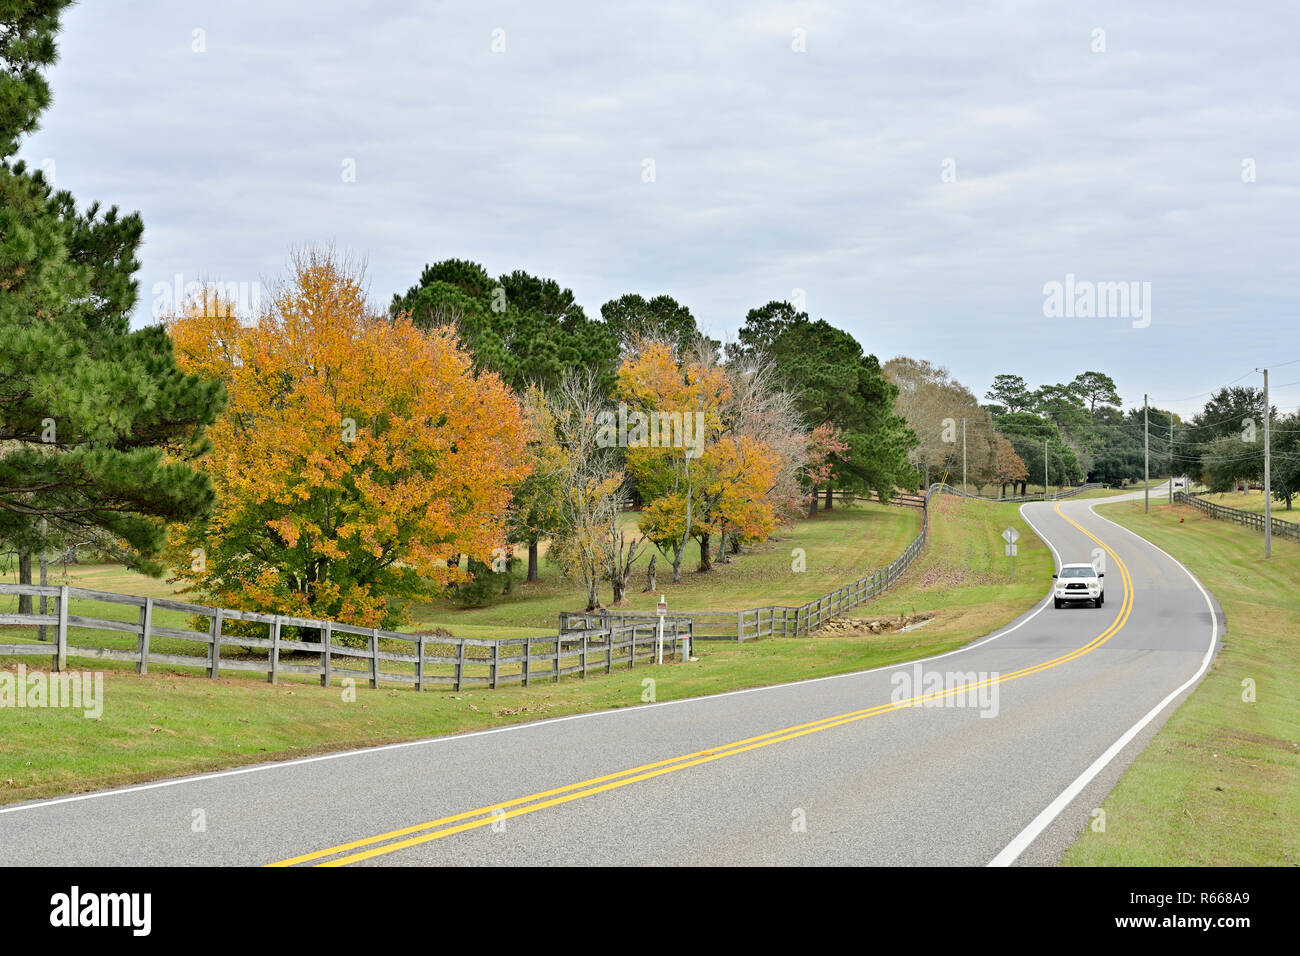 Tranquilo serpenteantes carreteras o lane con una valla de ferrocarril dividida y árboles cambiando en colores de otoño en el sur de Alabama, EE.UU., con un coche blanco se aproxima. Foto de stock